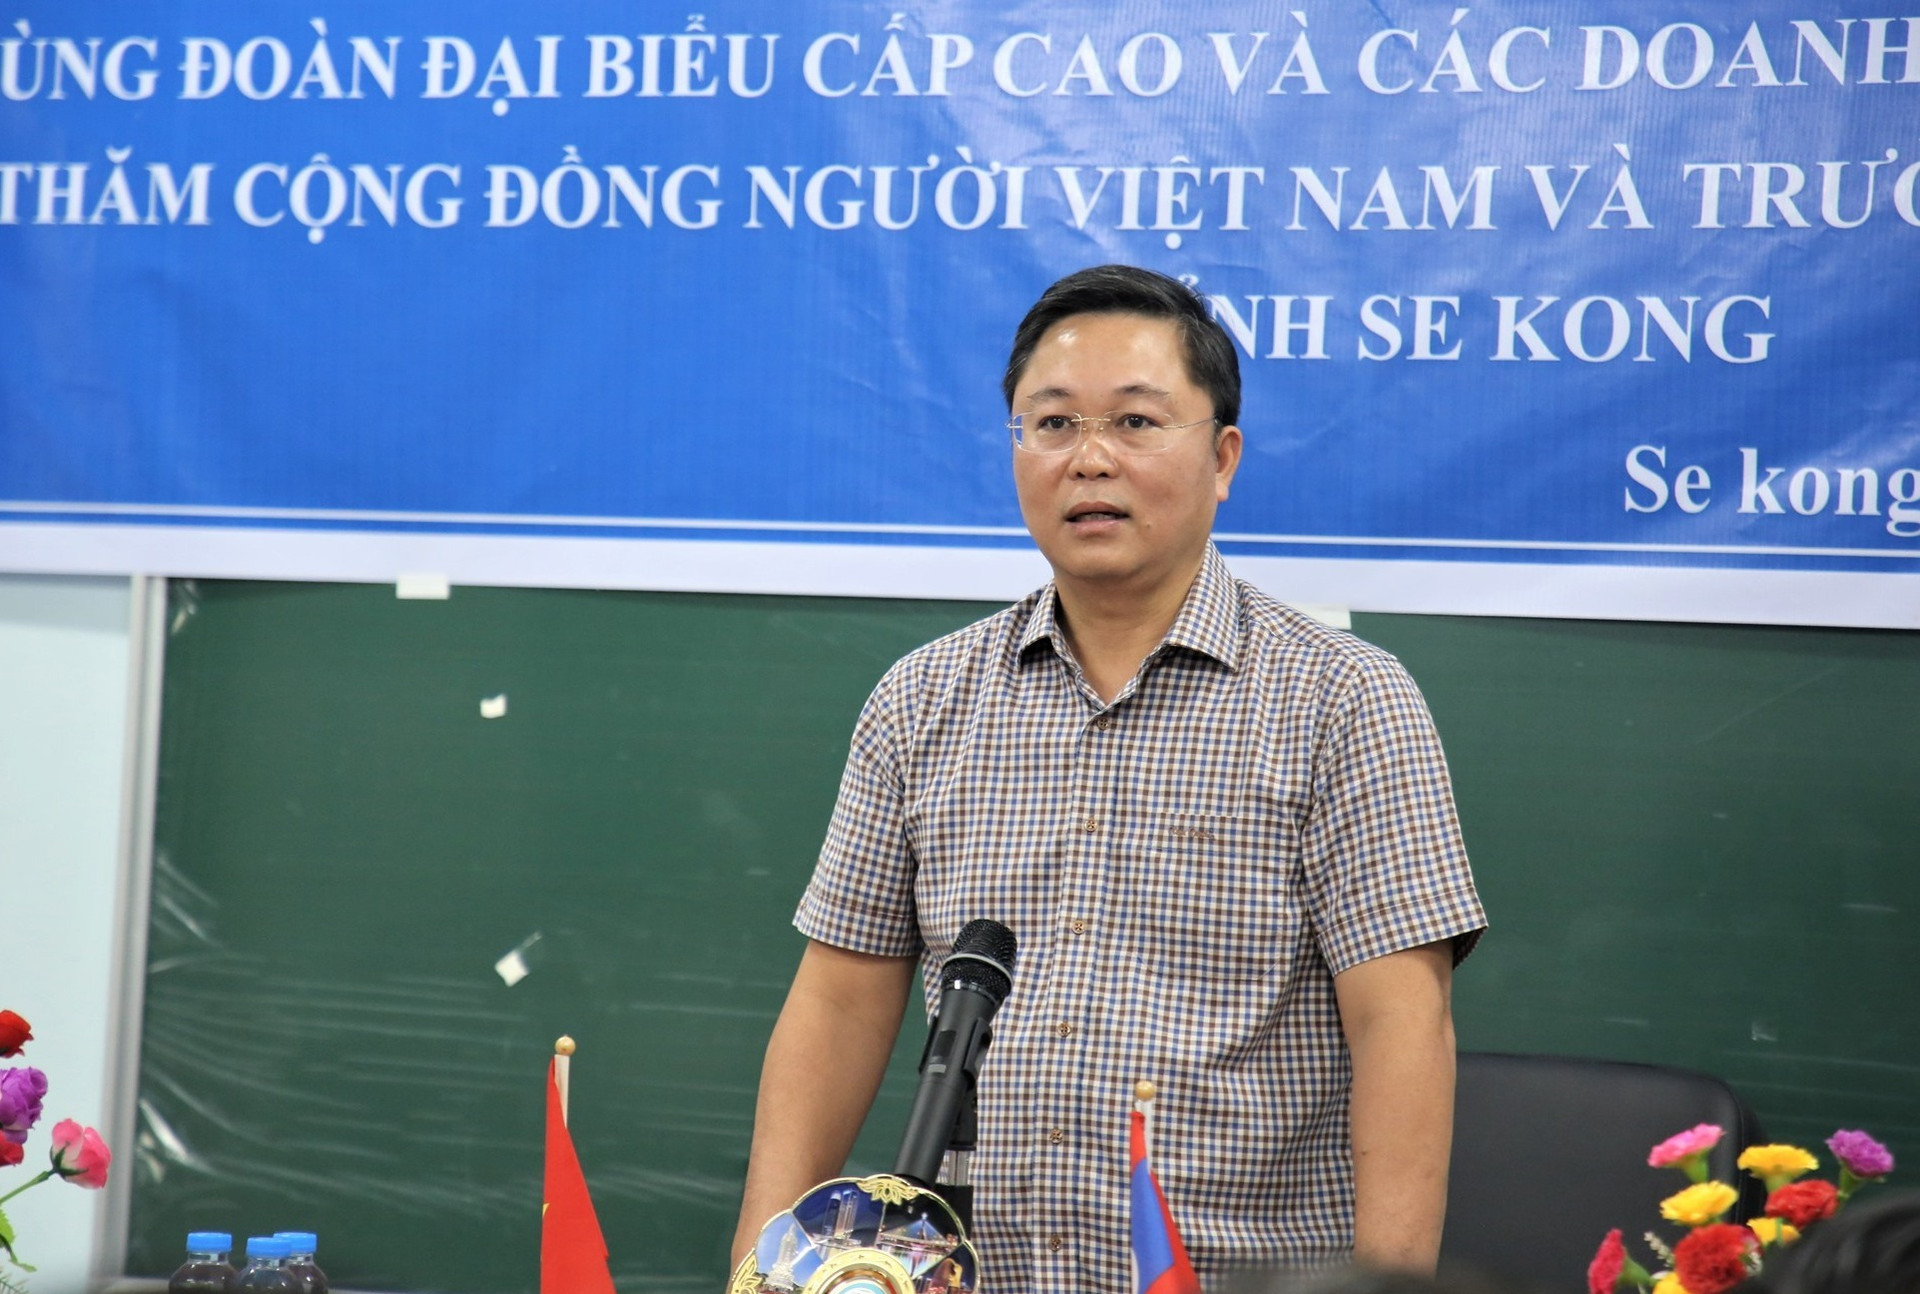 Chủ tịch UBND tỉnh Lê Trí Thanh chia sẻ tại buổi gặp mặt Hội người Việt Nam tại Sê Kông. Ảnh: A.N